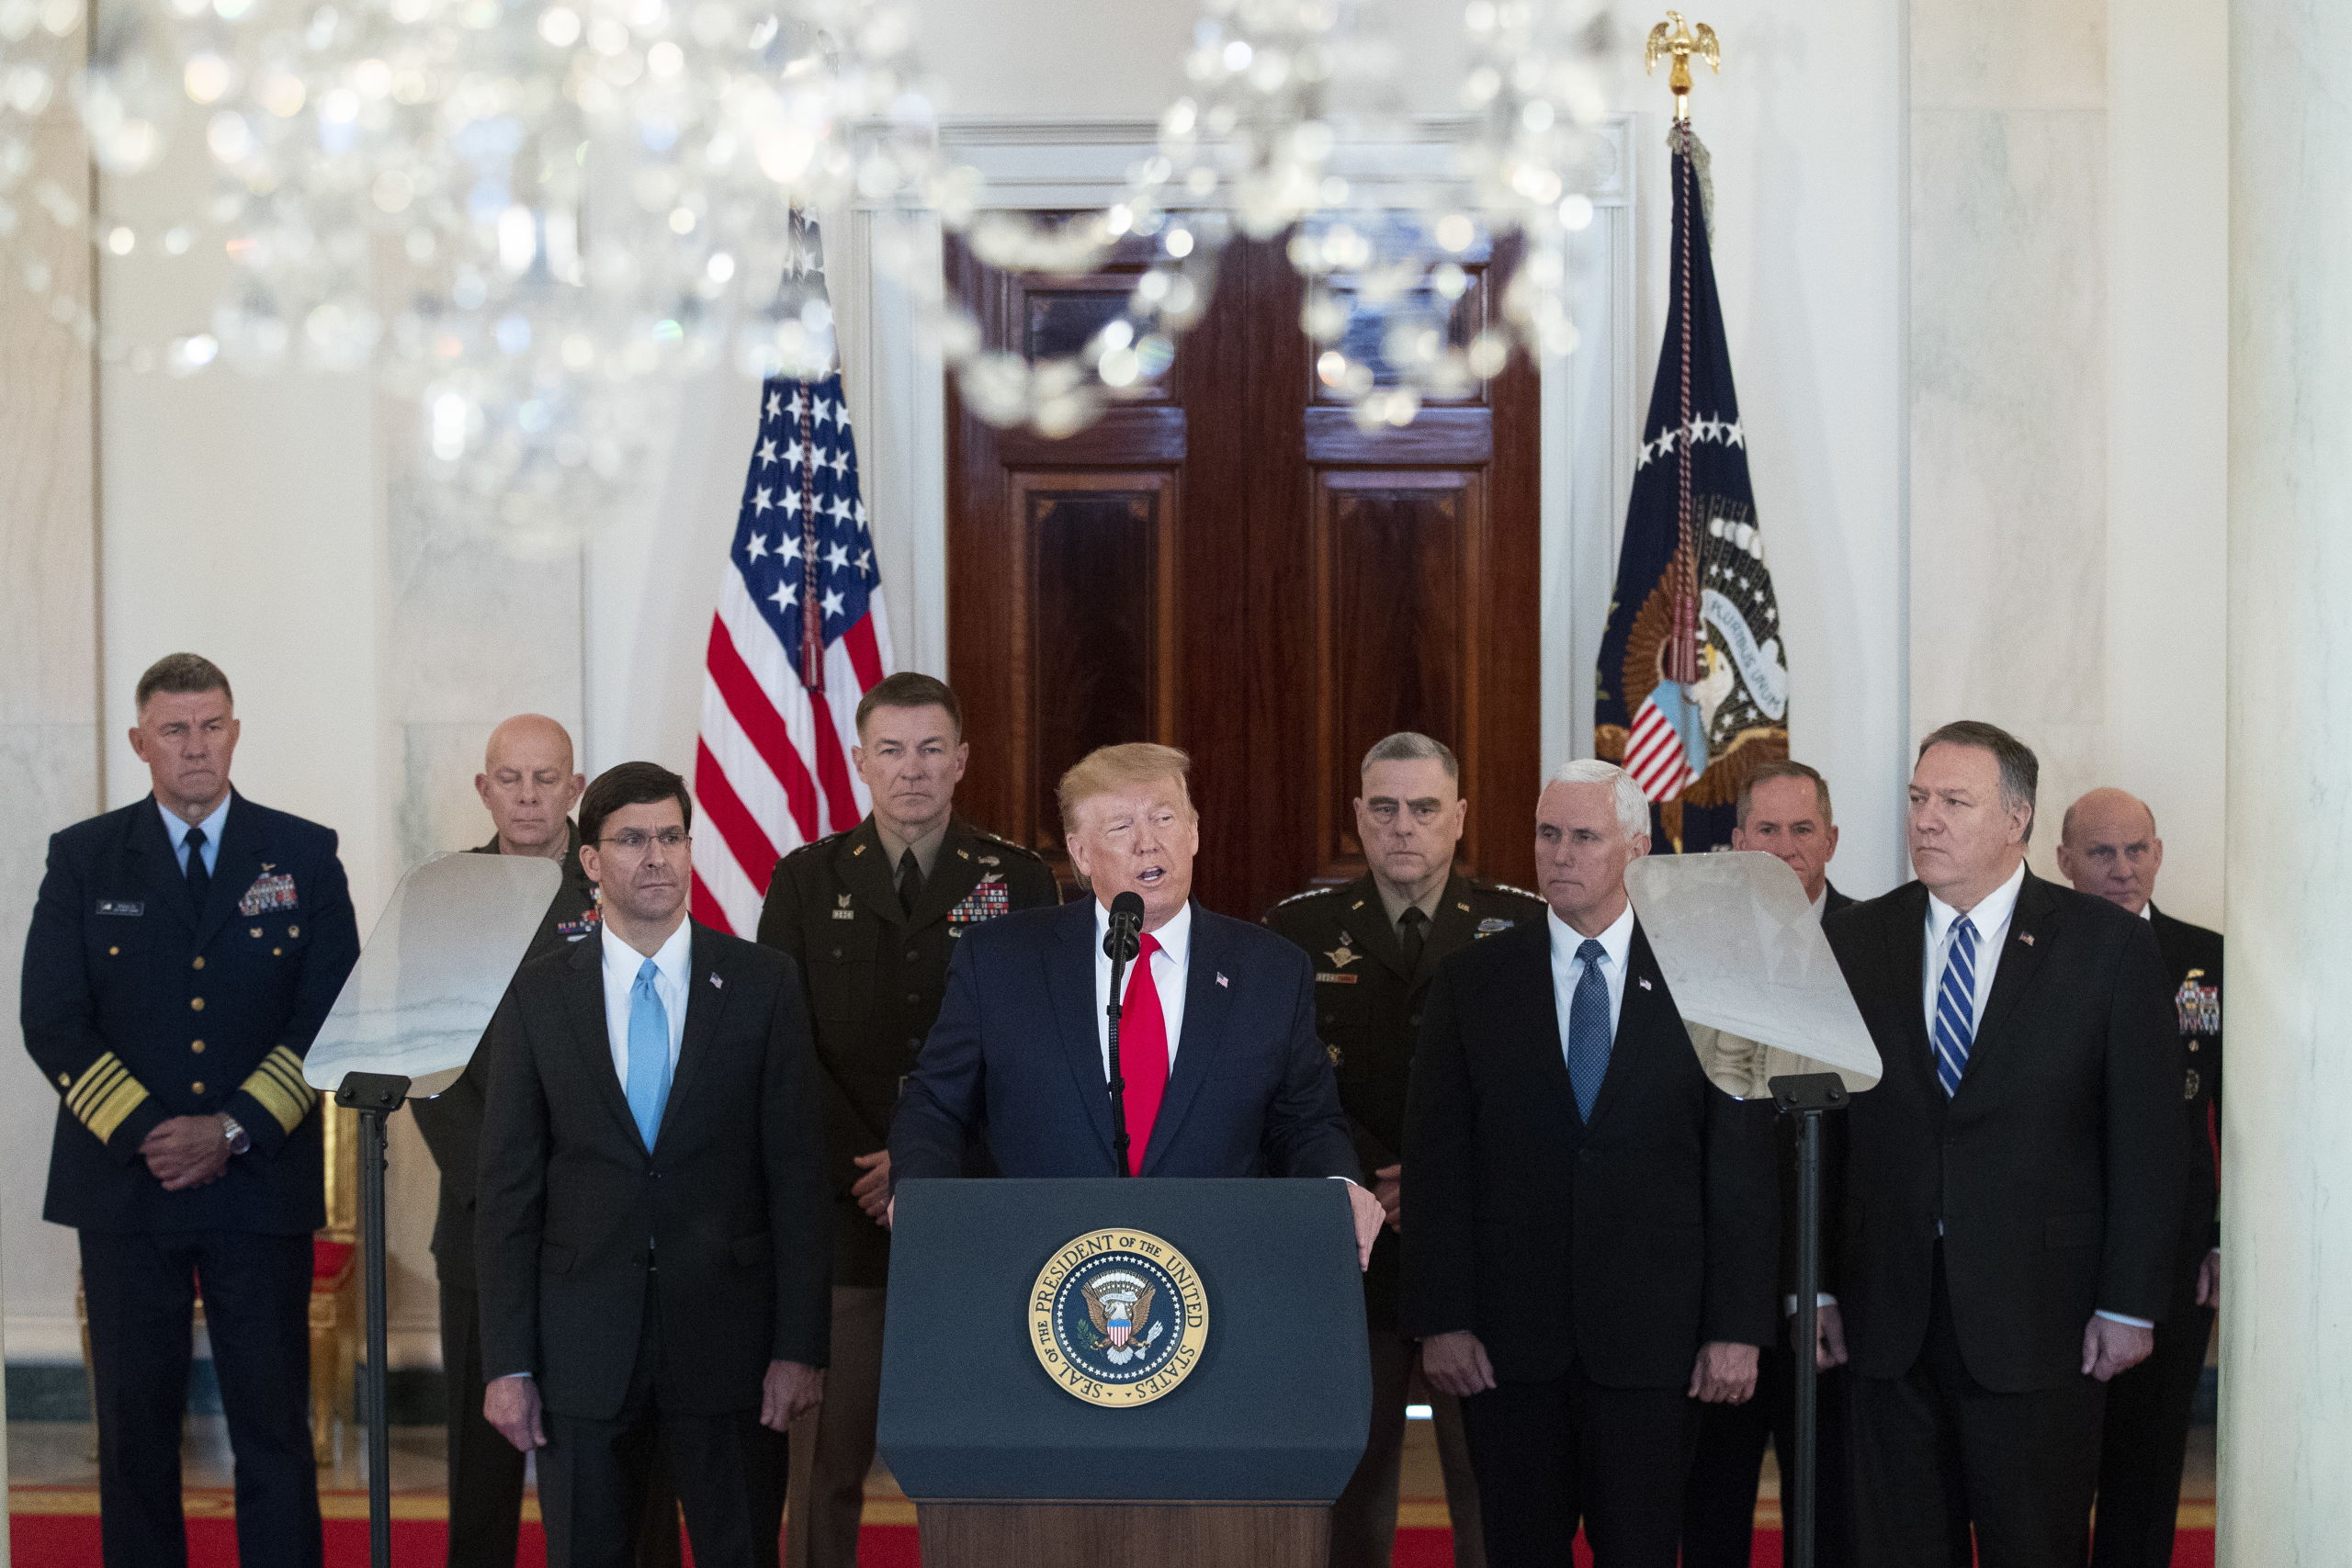 Donald Trump houdt een speech, nadat Iran een wraakactie ondernam voor de dood van Soleimani. Hij wordt omringd door onder meer vicepresident Pence en minister van Buitenlandse Zaken Pompeo. 